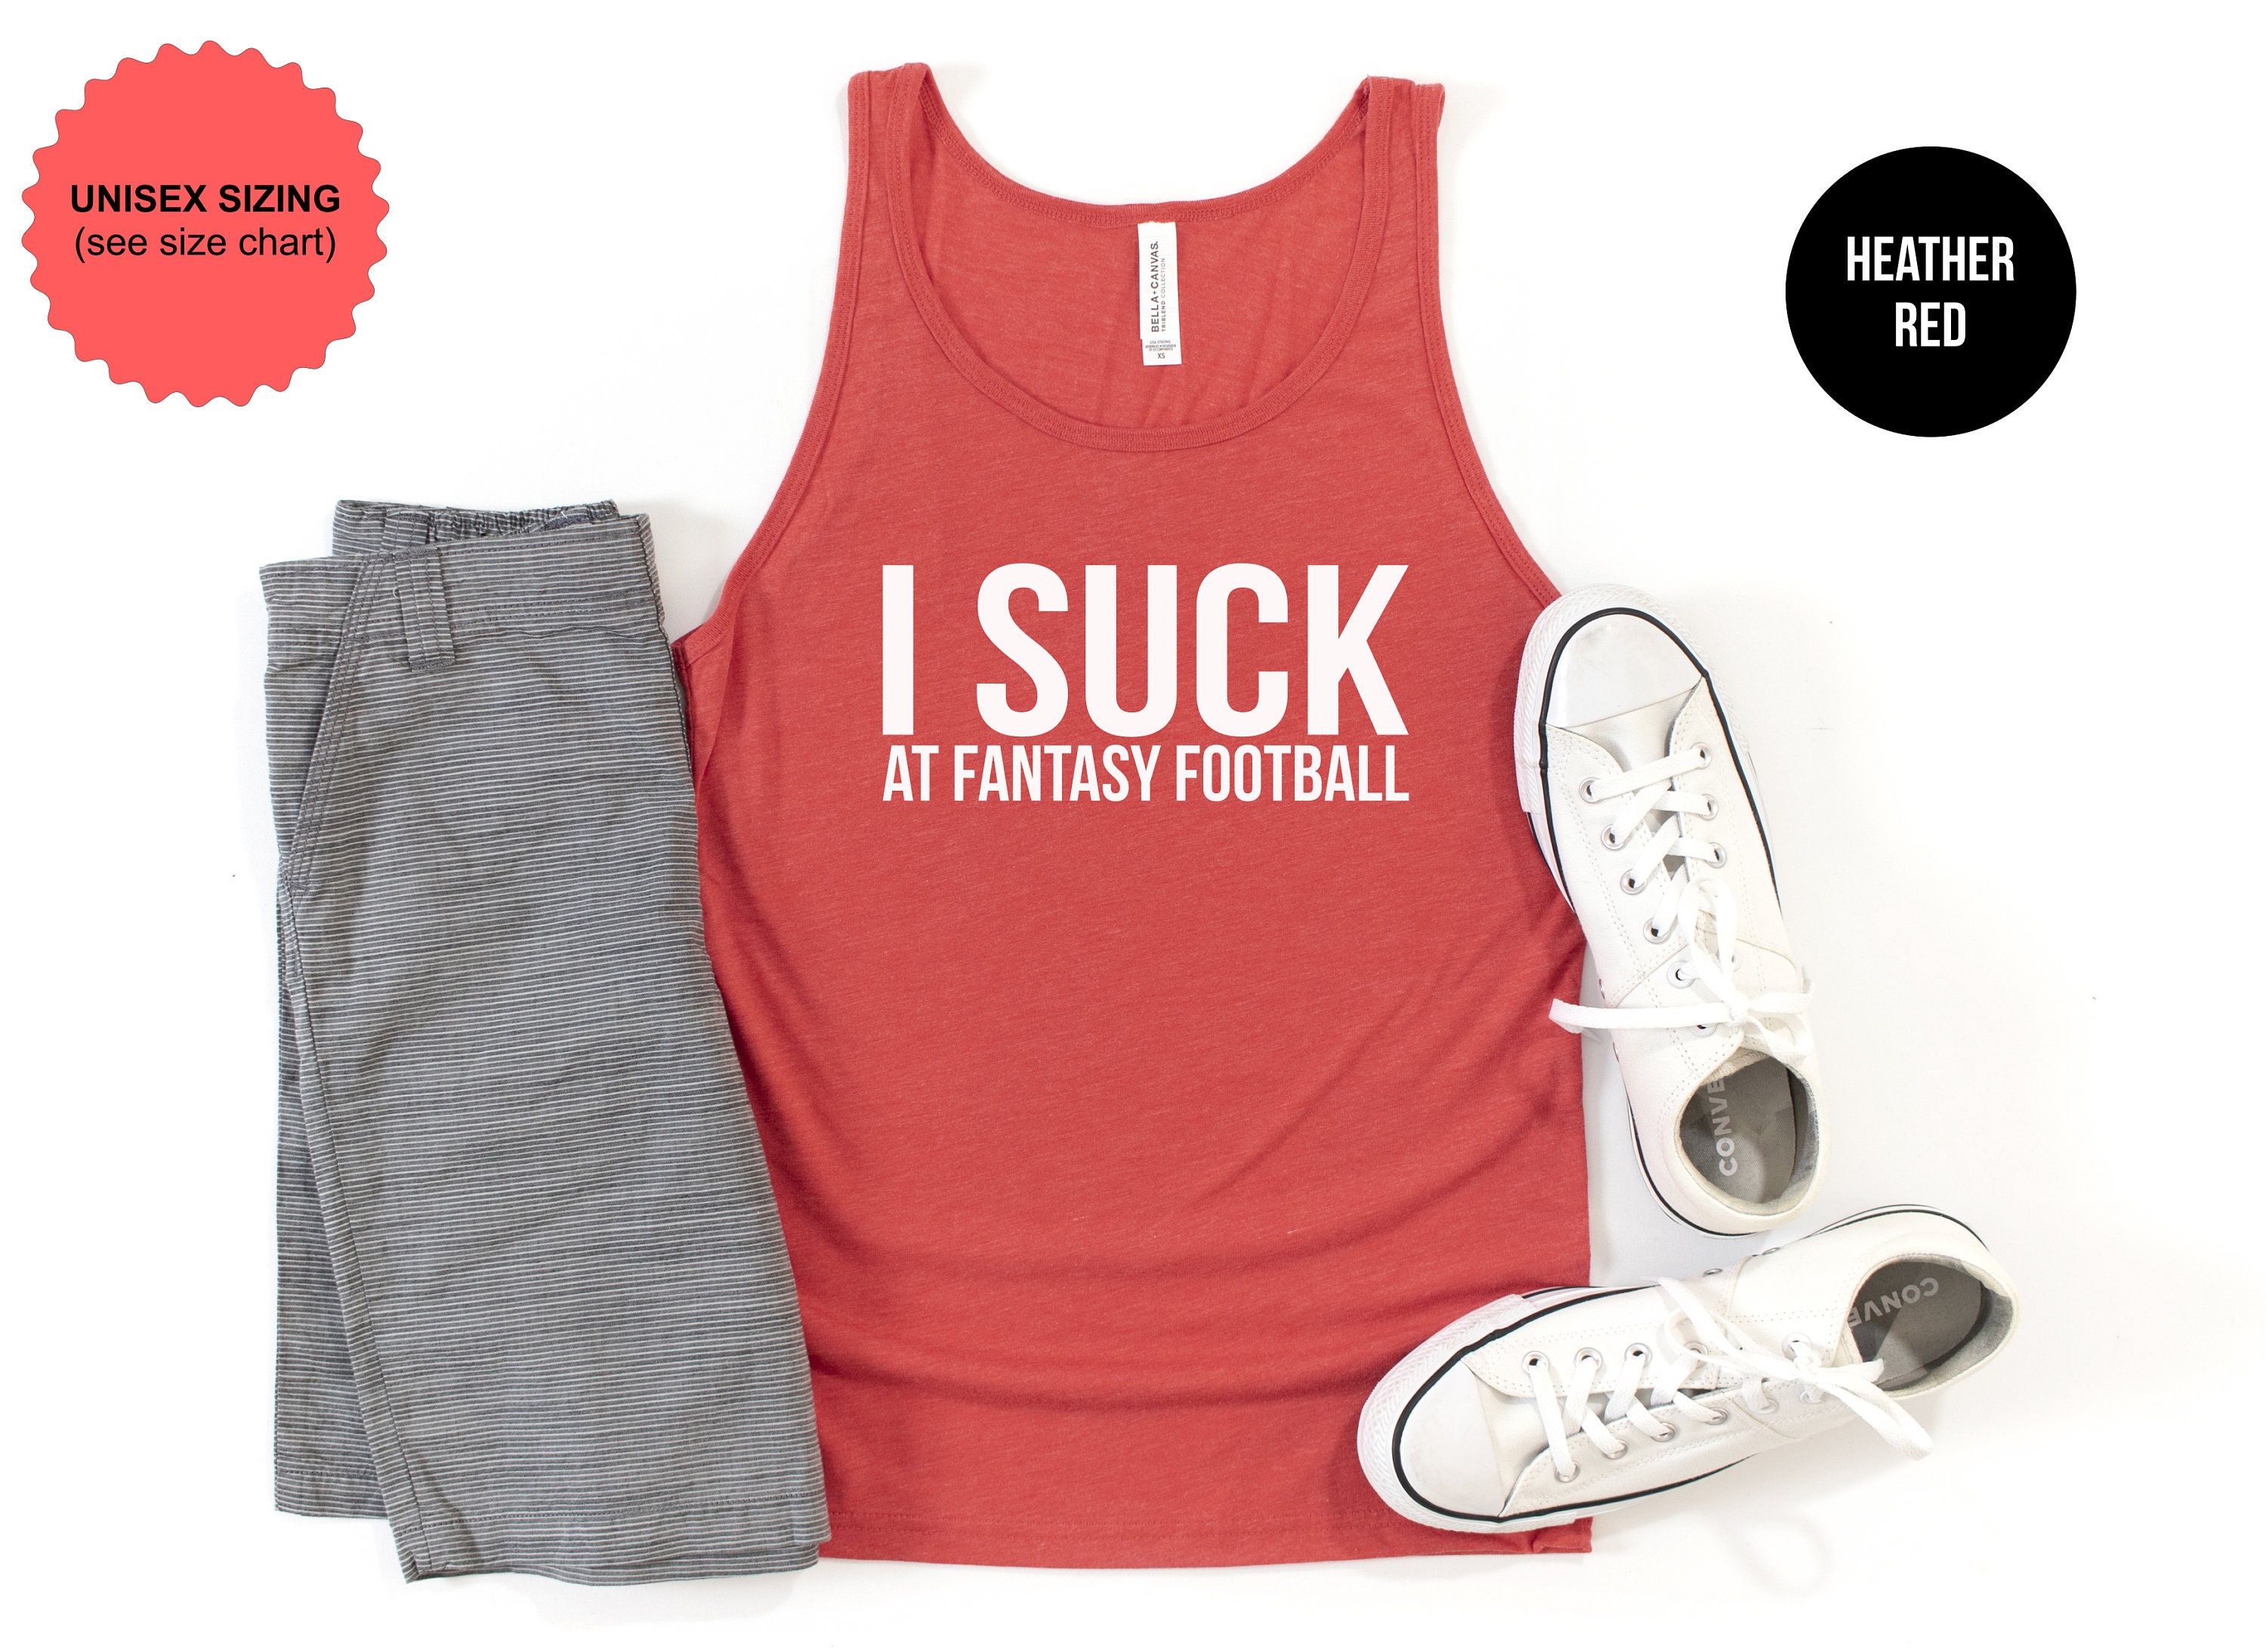 Fantasy Football Loser Vest